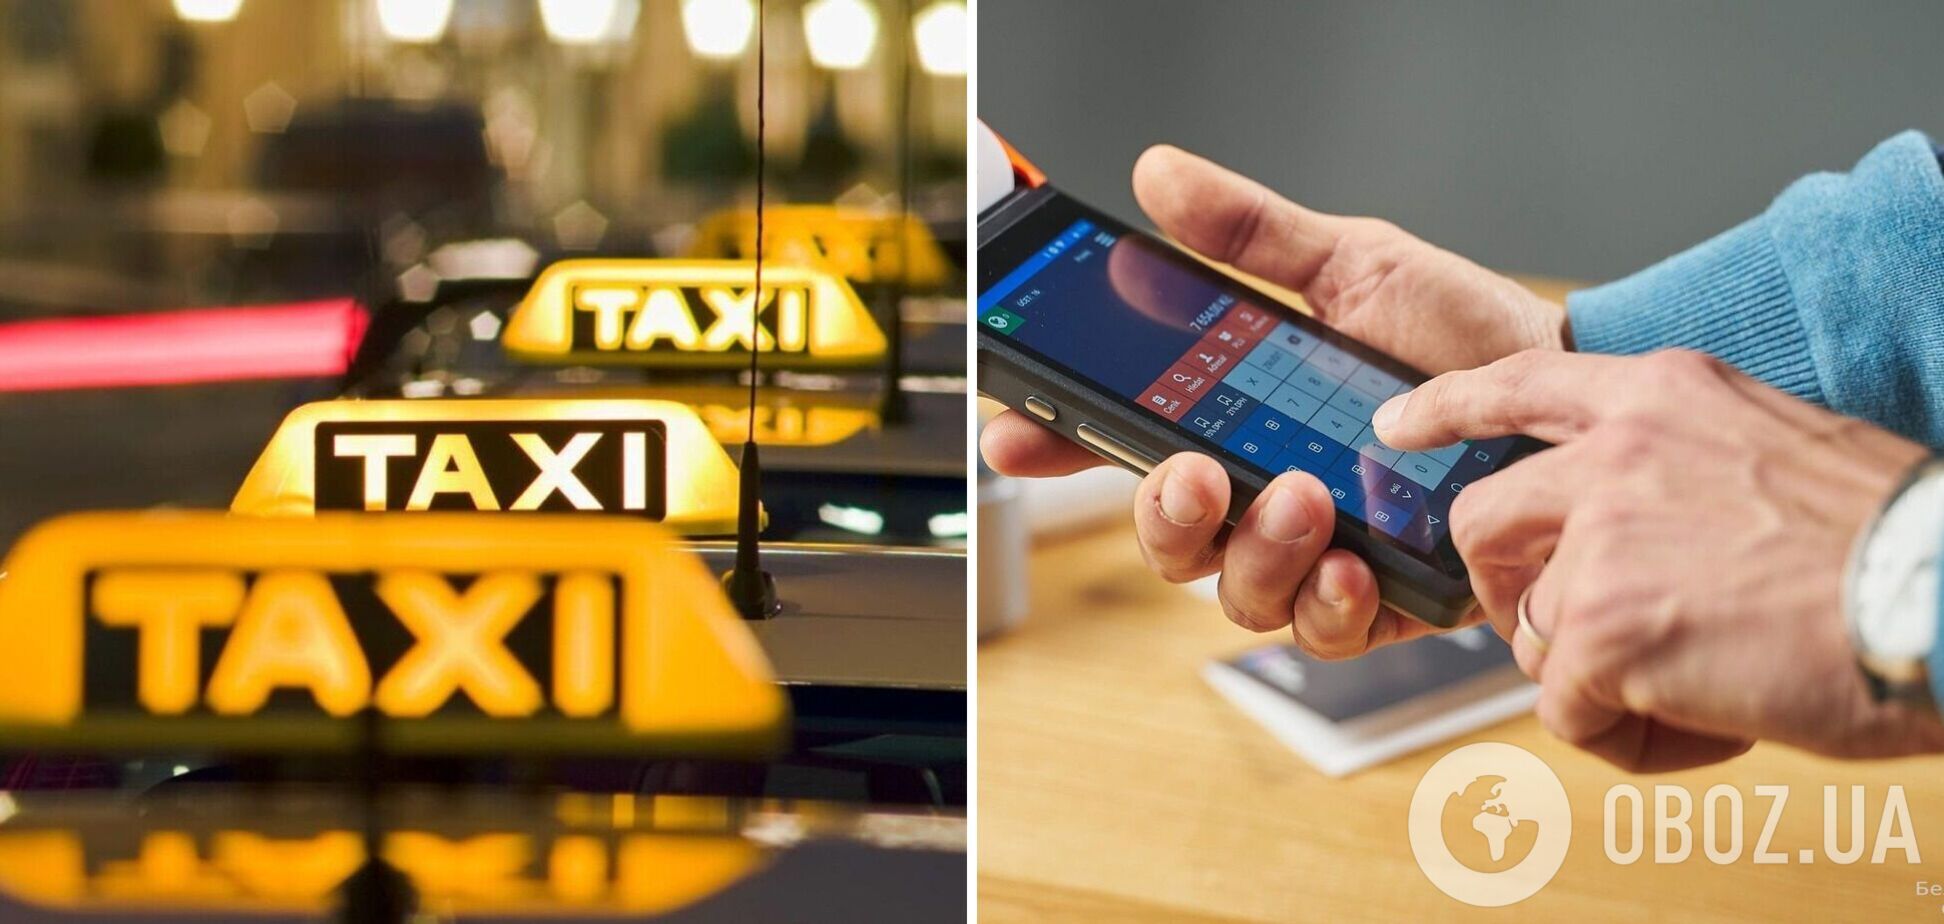 Водителей такси могут обязать выдавать чеки